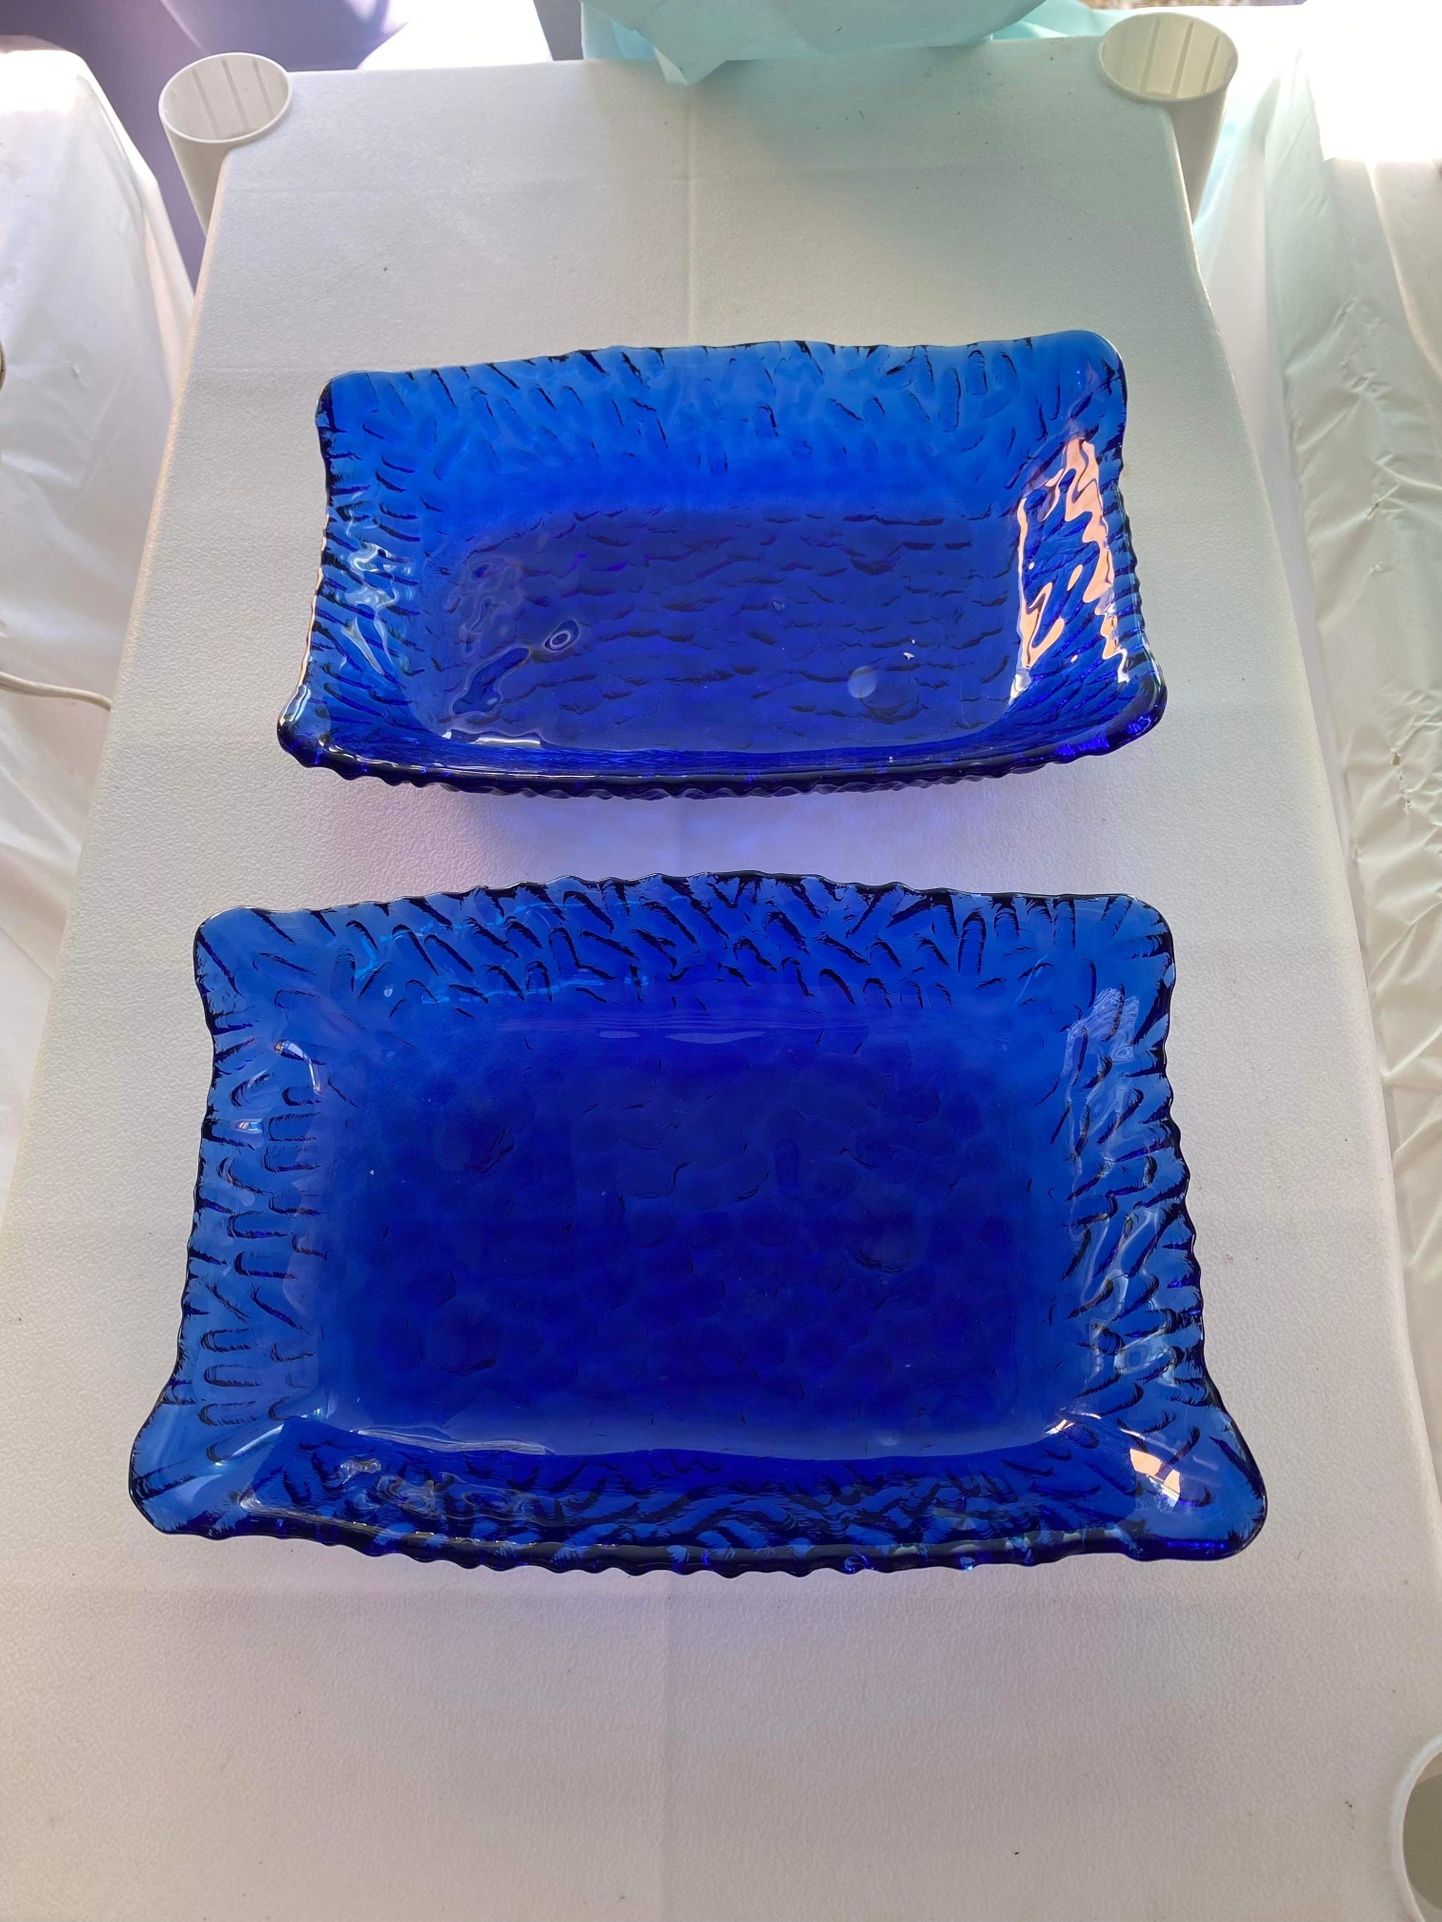 Vintage Rectangular Cobalt Blue Textured Glass Candy/Trinket Dishes Set Of 2